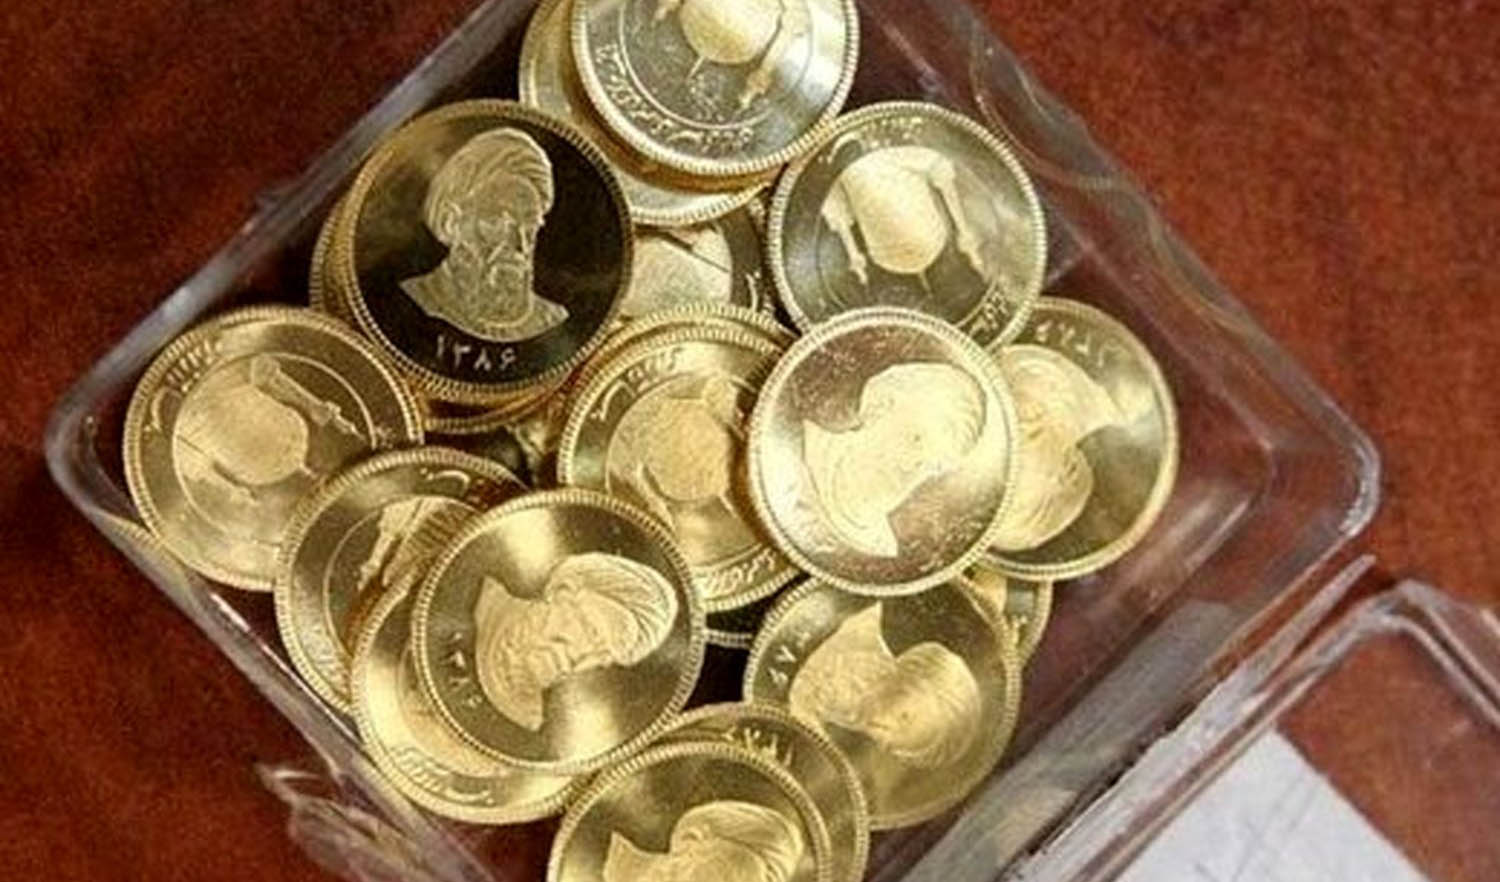 قیمت طلا و سکه امروز یکم خرداد؛ کاهش ۲۰۰ هزار تومانی قیمت سکه